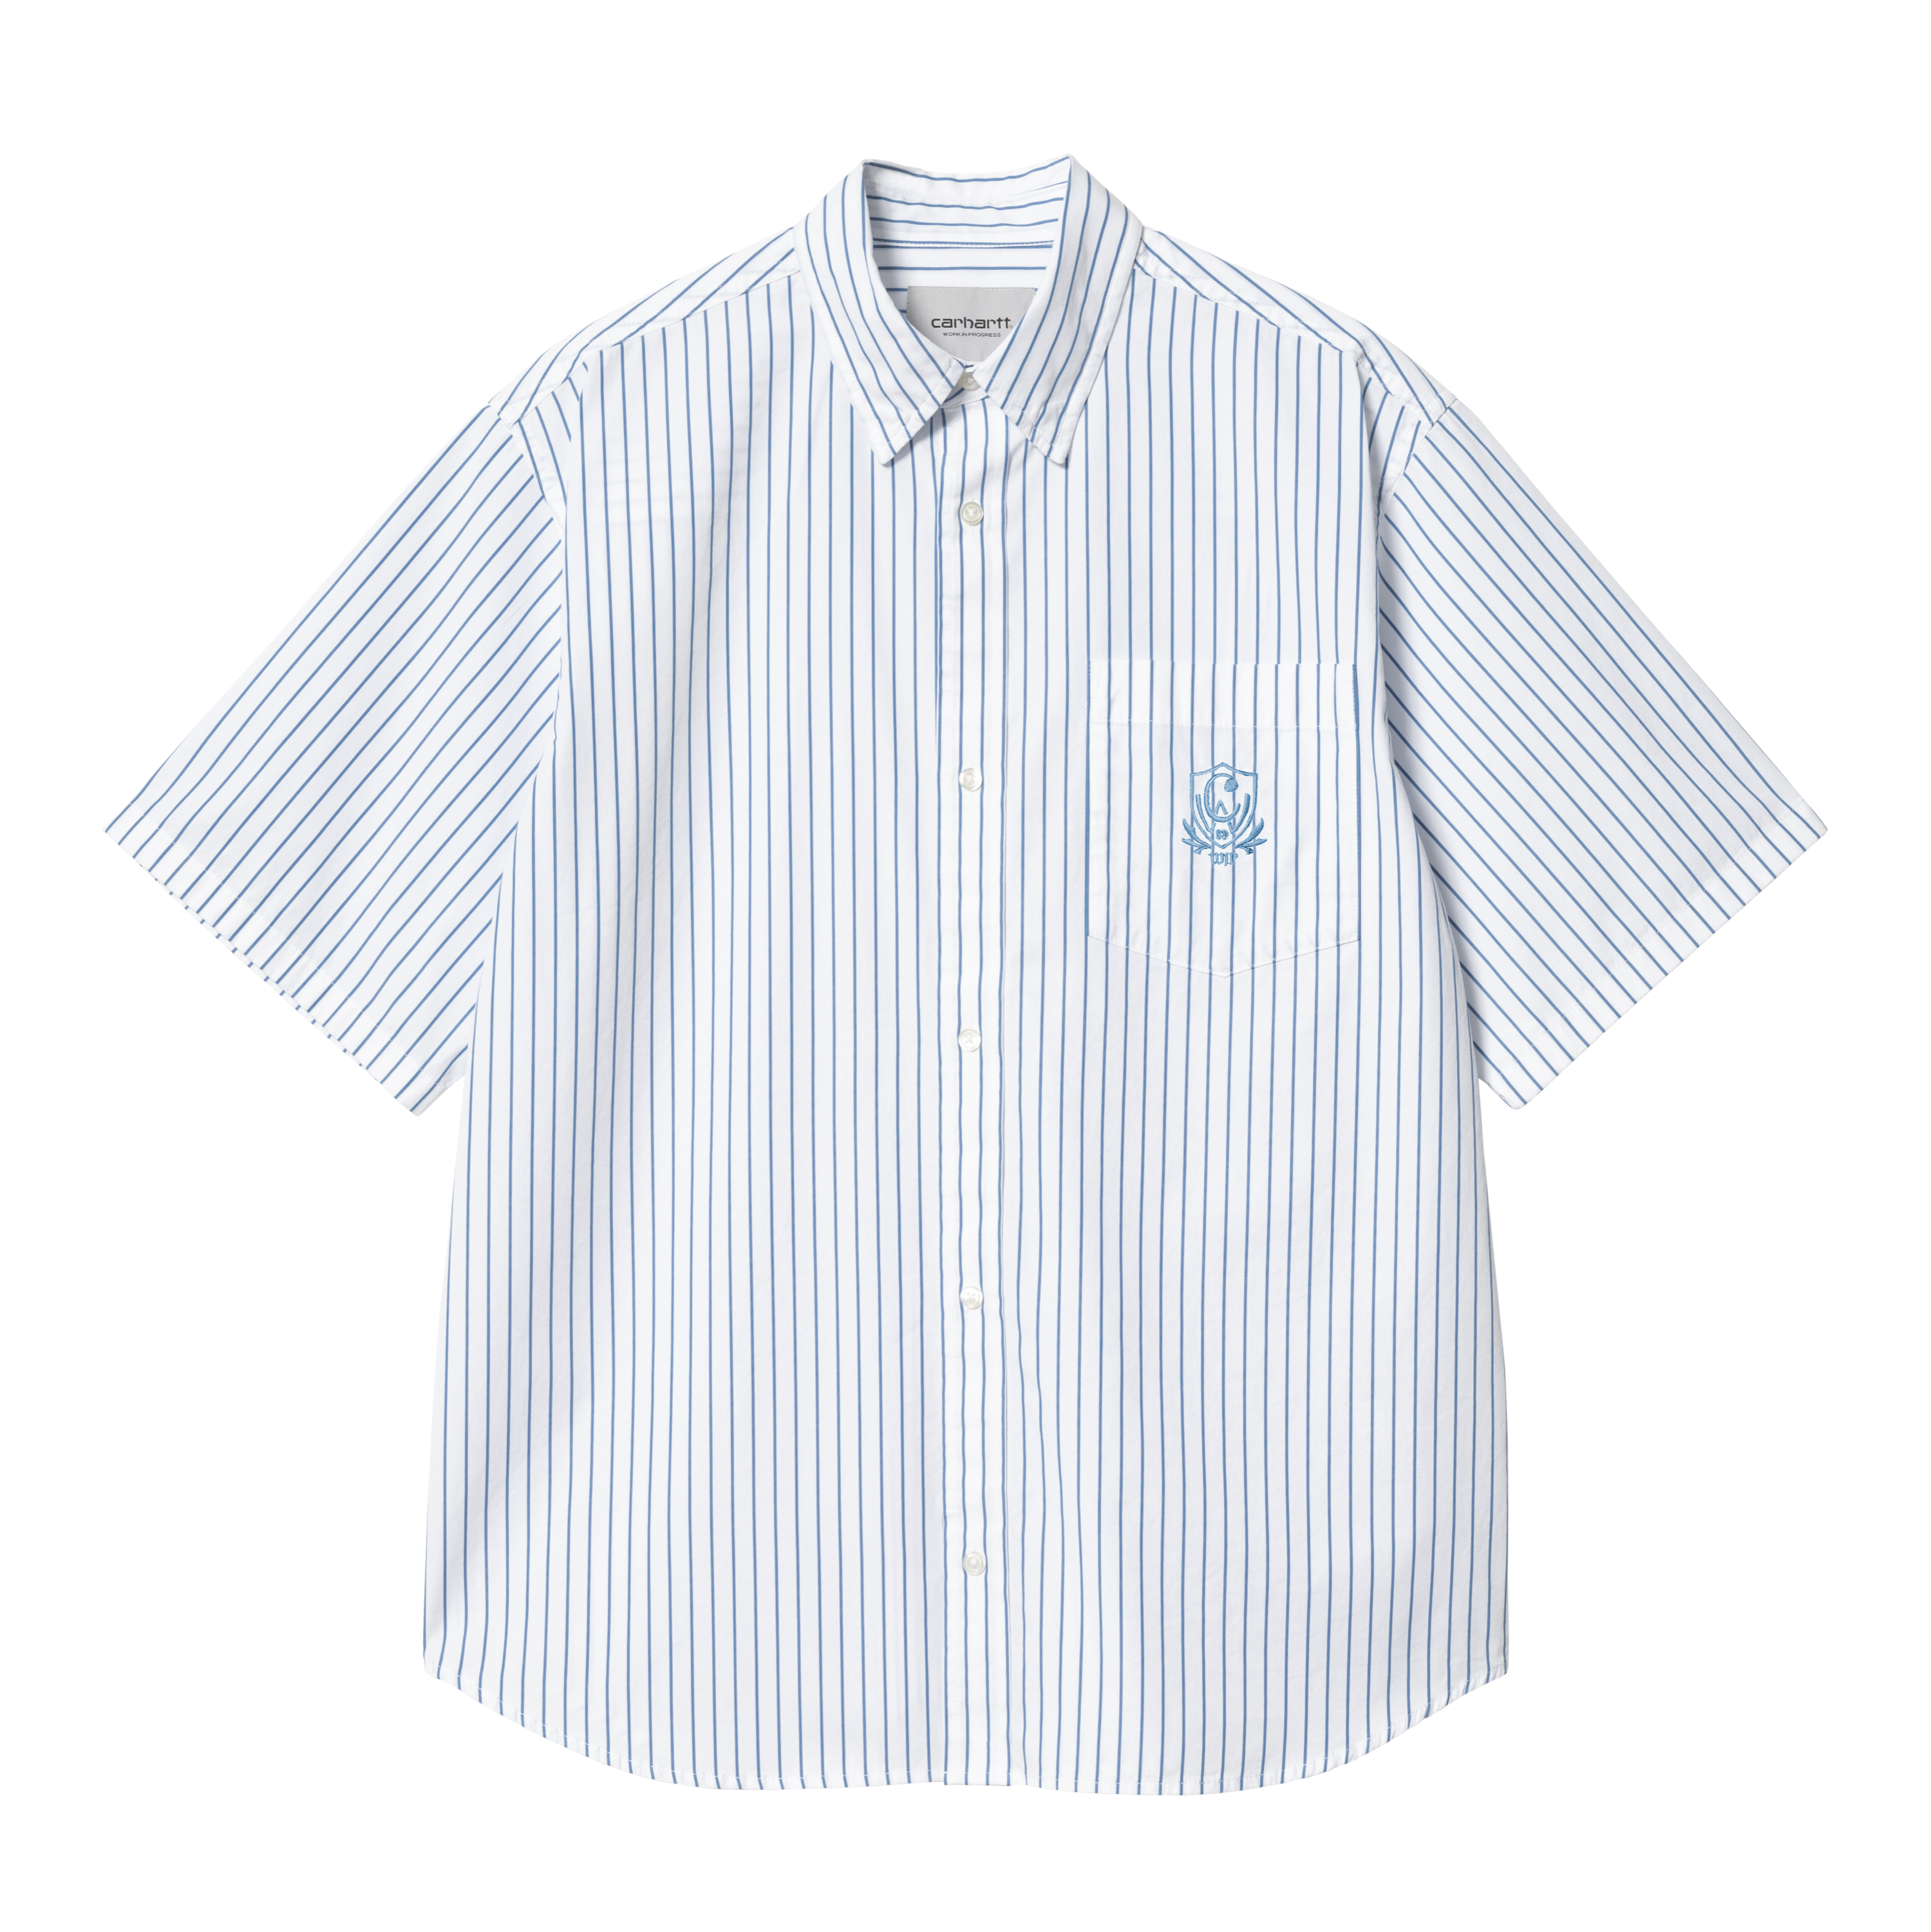 Carhartt WIP Short Sleeve Linus Shirt en Blanco